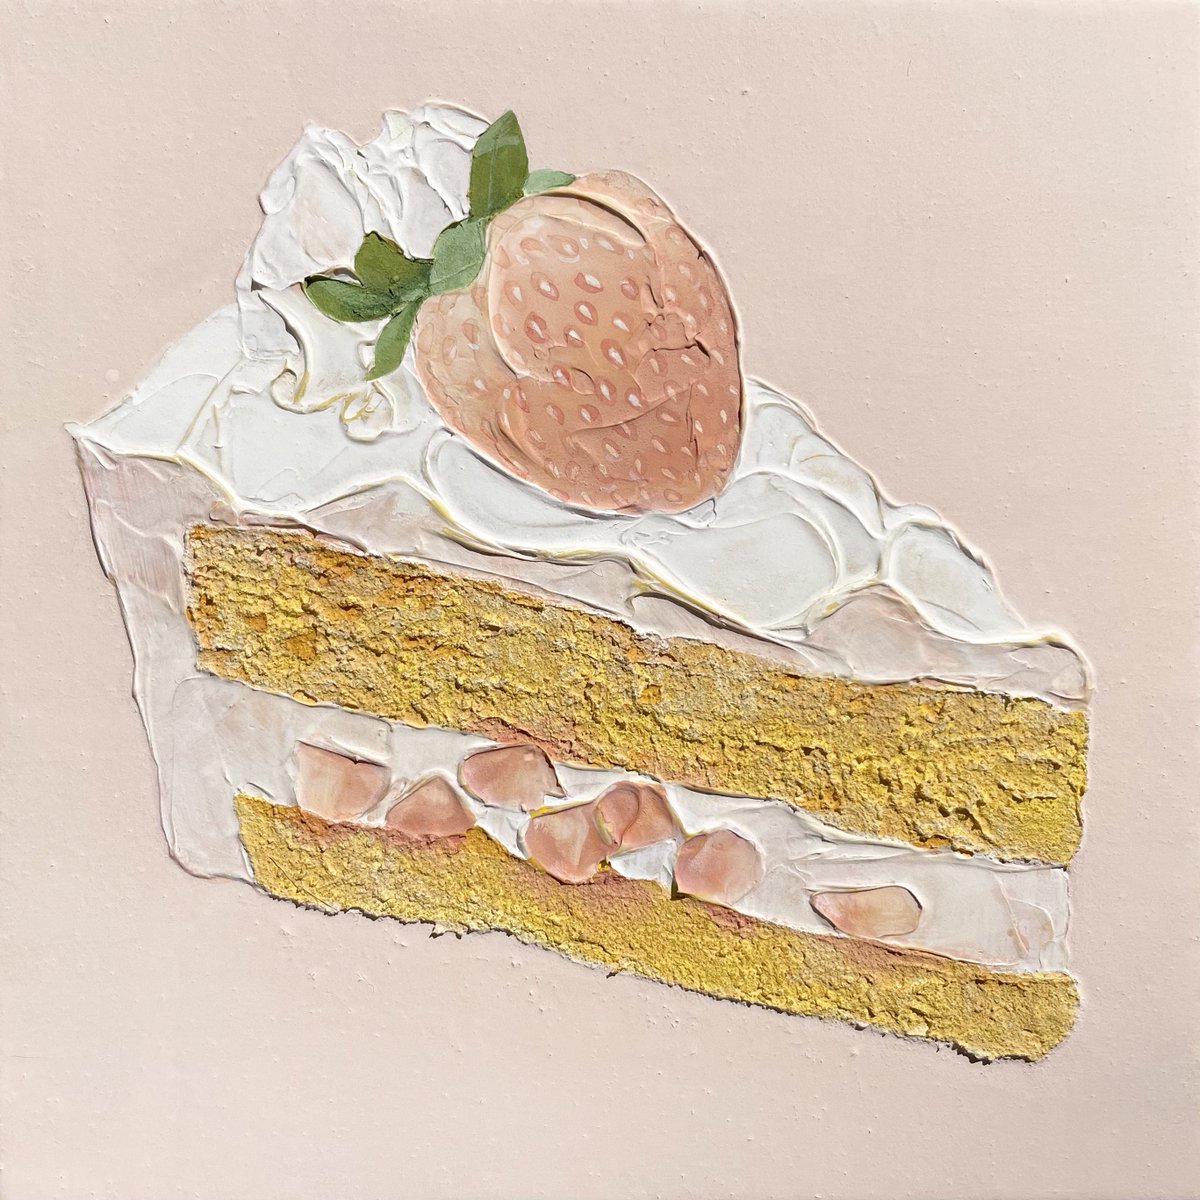 「白いちごのショートケーキ」|𝓝𝓪𝓽𝓼𝓾𝓶𝓲🍓Natsumi Takahashiのイラスト